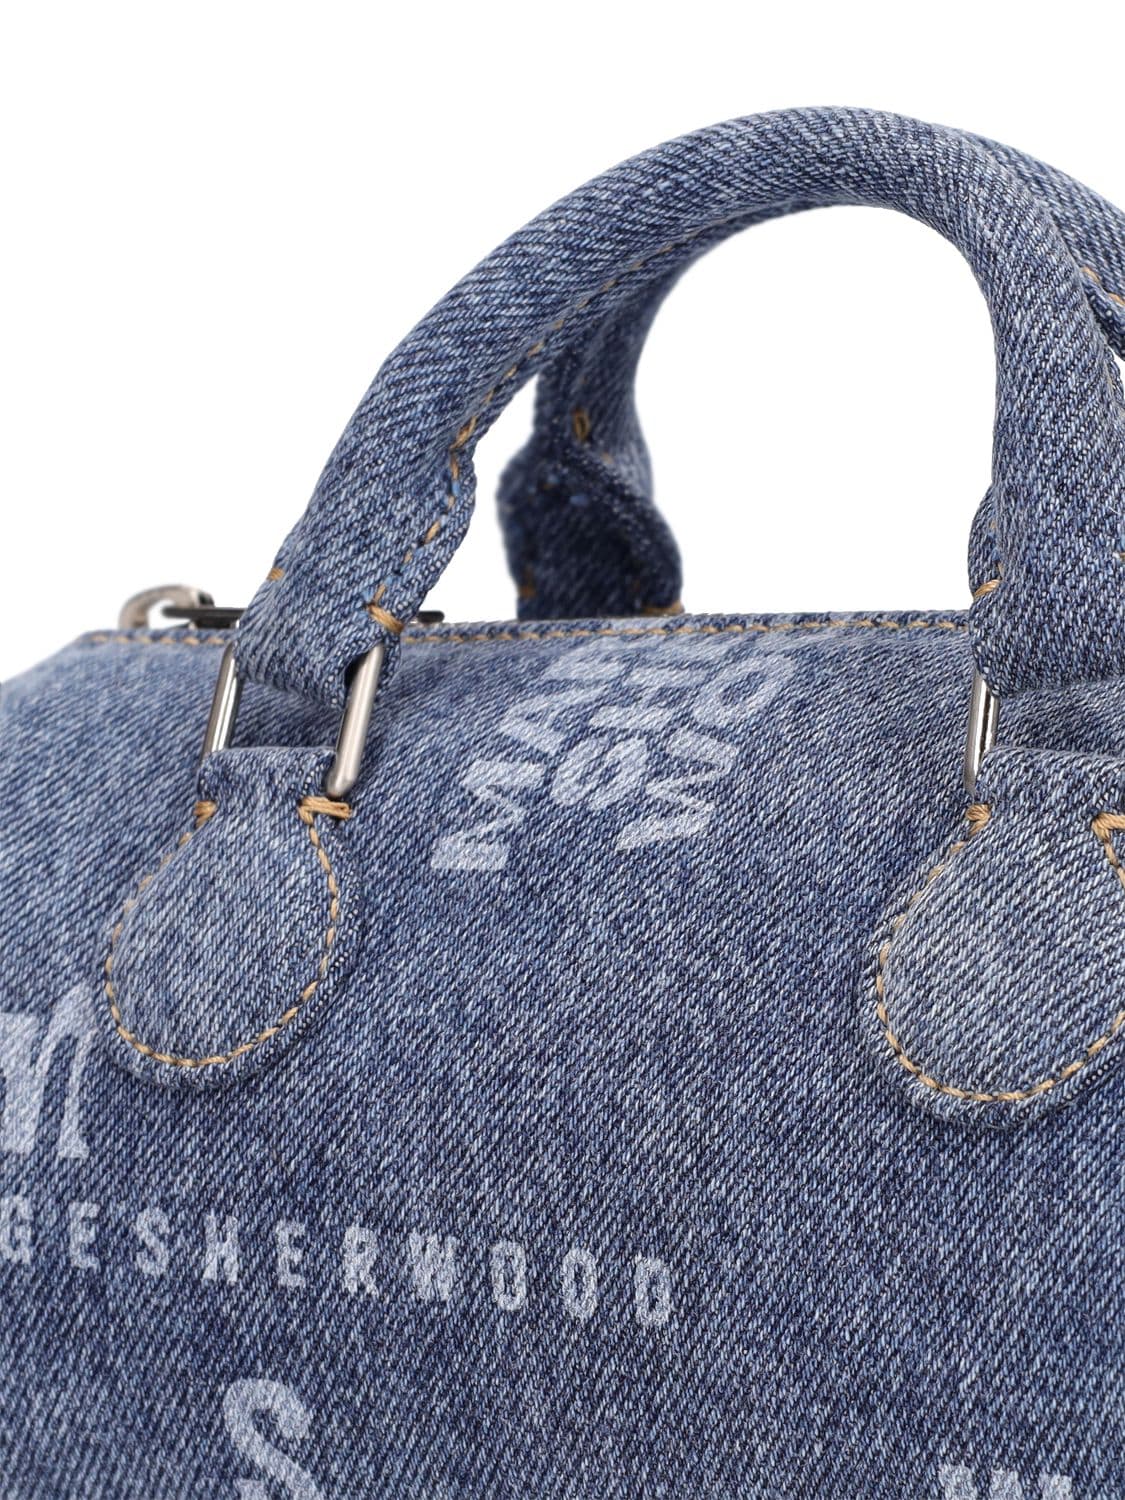 Marge Sherwood Metallic Log Bag